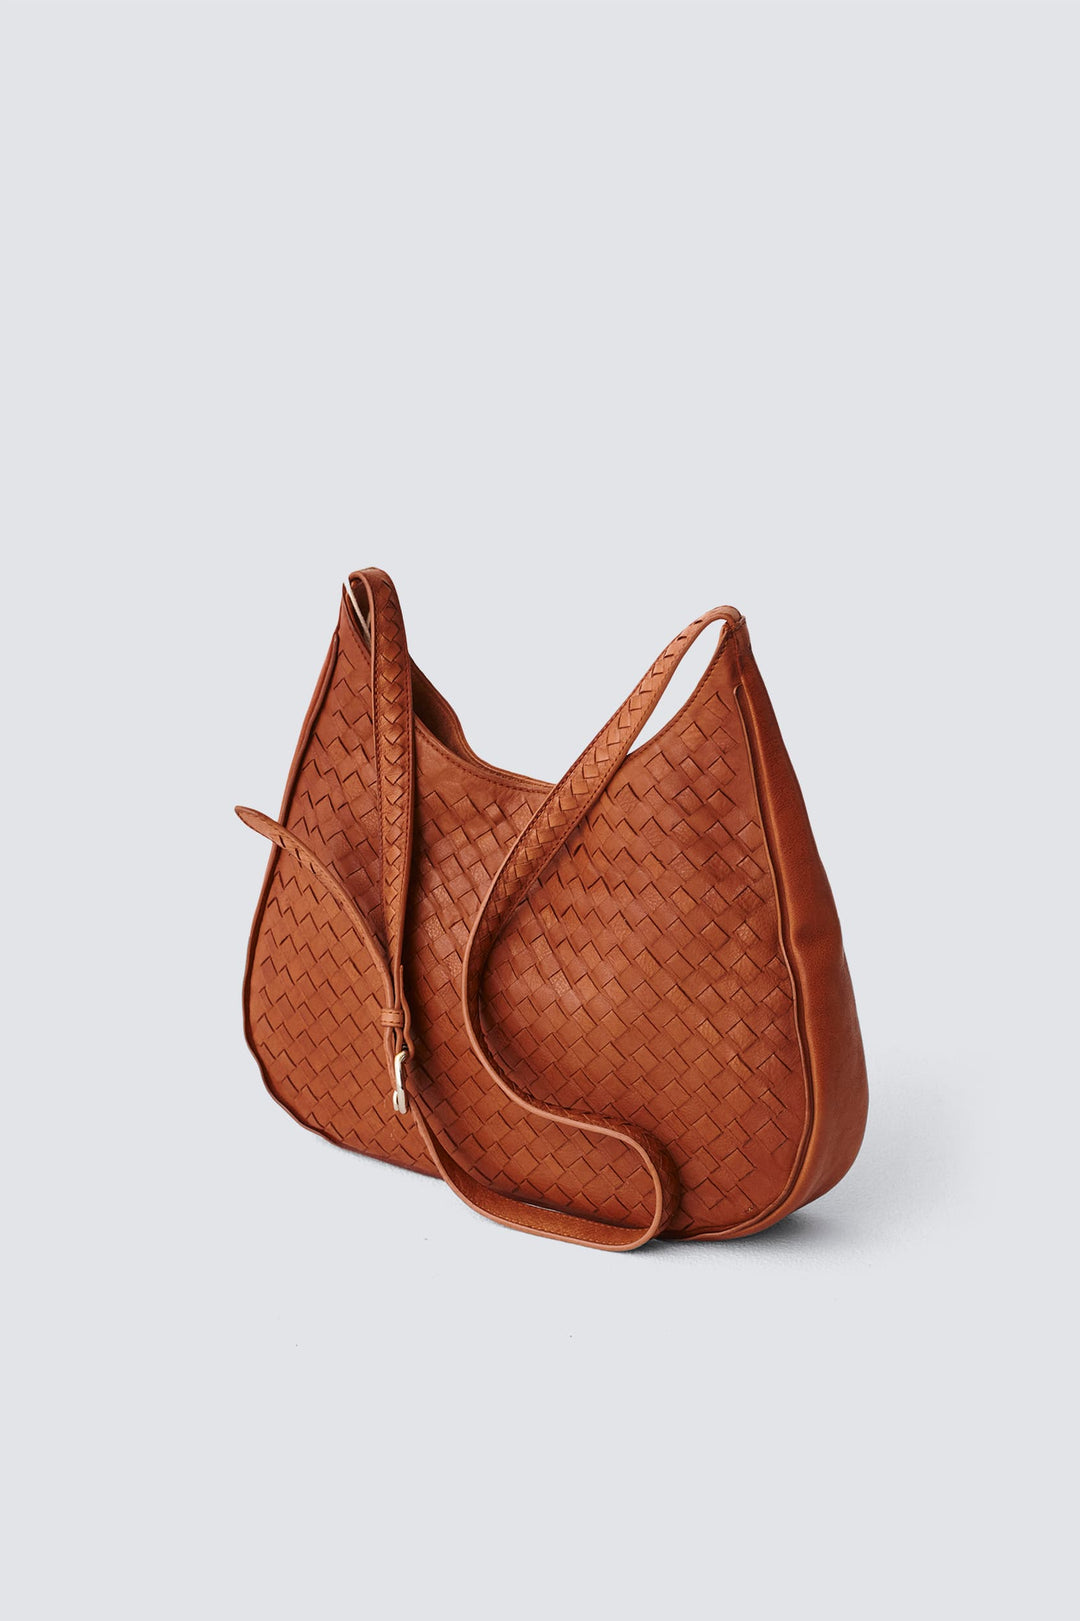 Dragon Diffusion woven leather bag handmade - Zak Hobo Tan